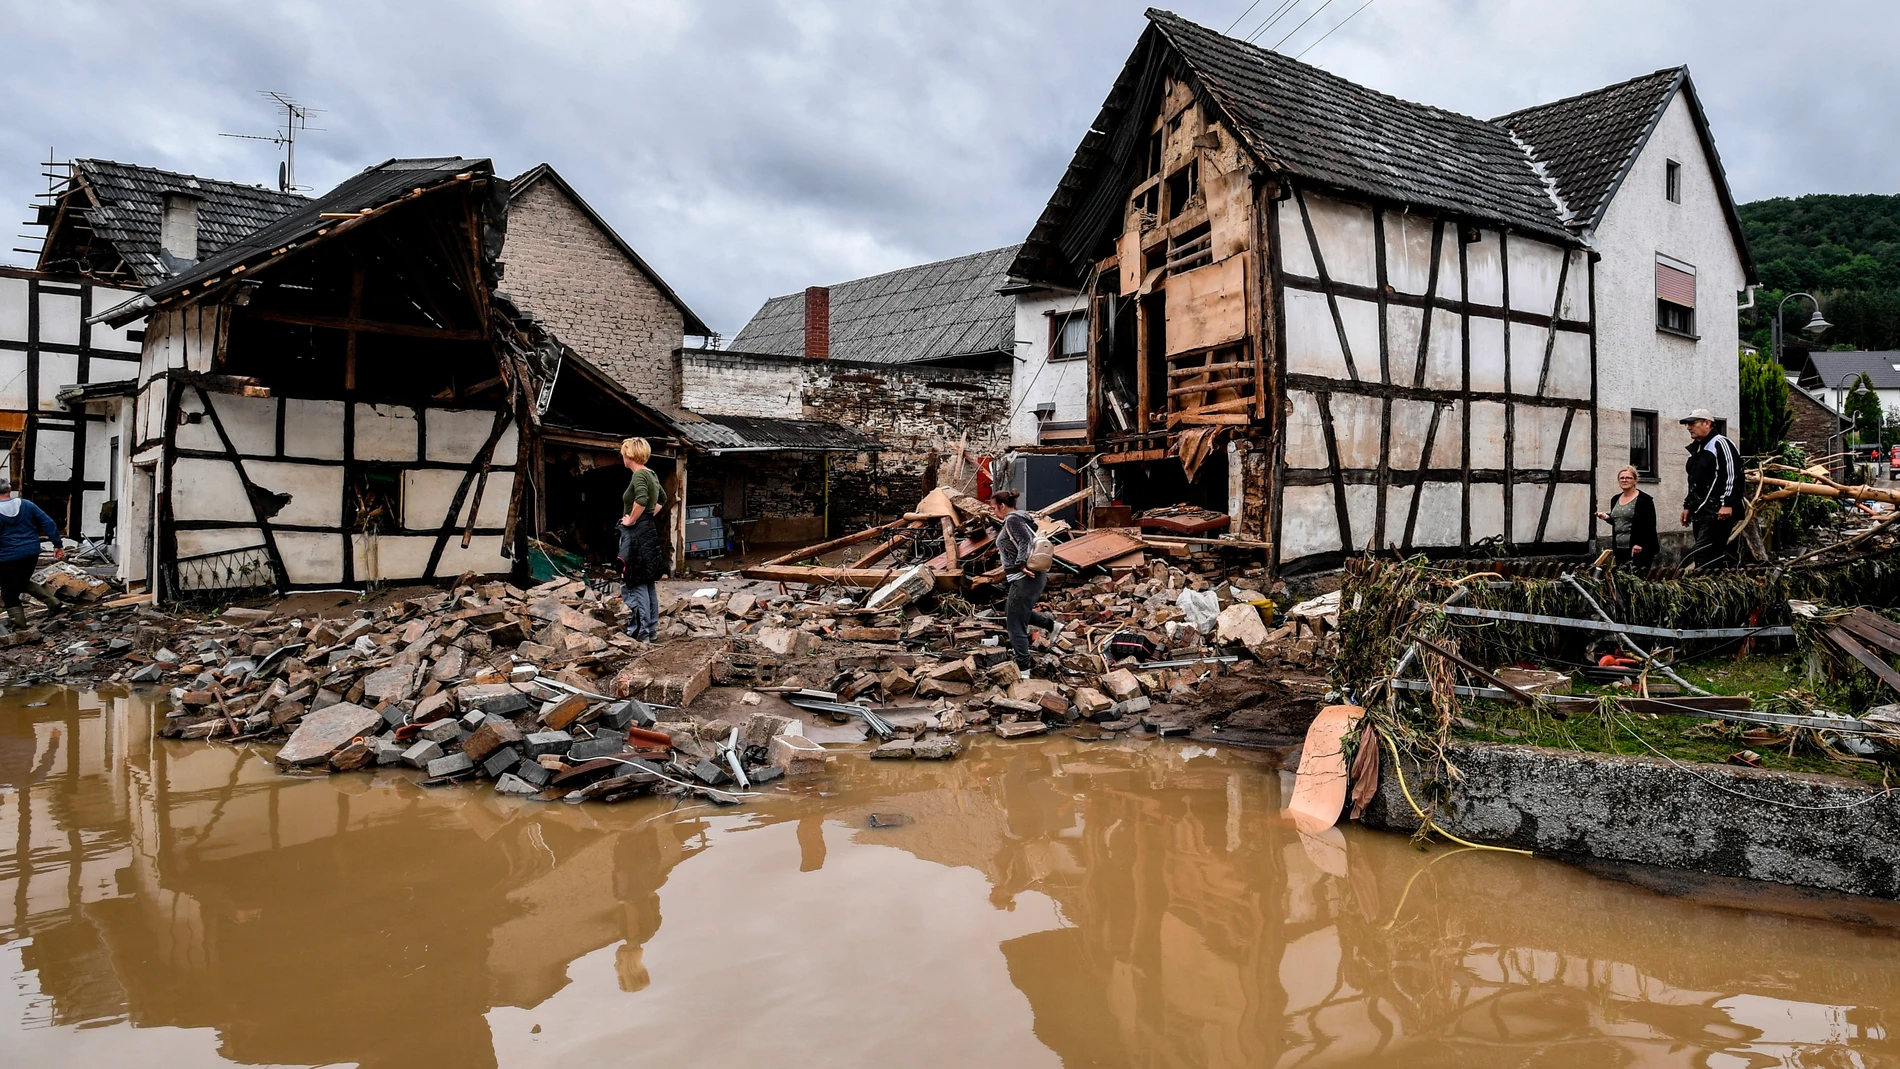 El río Ahr, en Schuld, Alemania, desbordado tras las inundaciones que han dejado más de 80 muertos y miles de desaparacidos